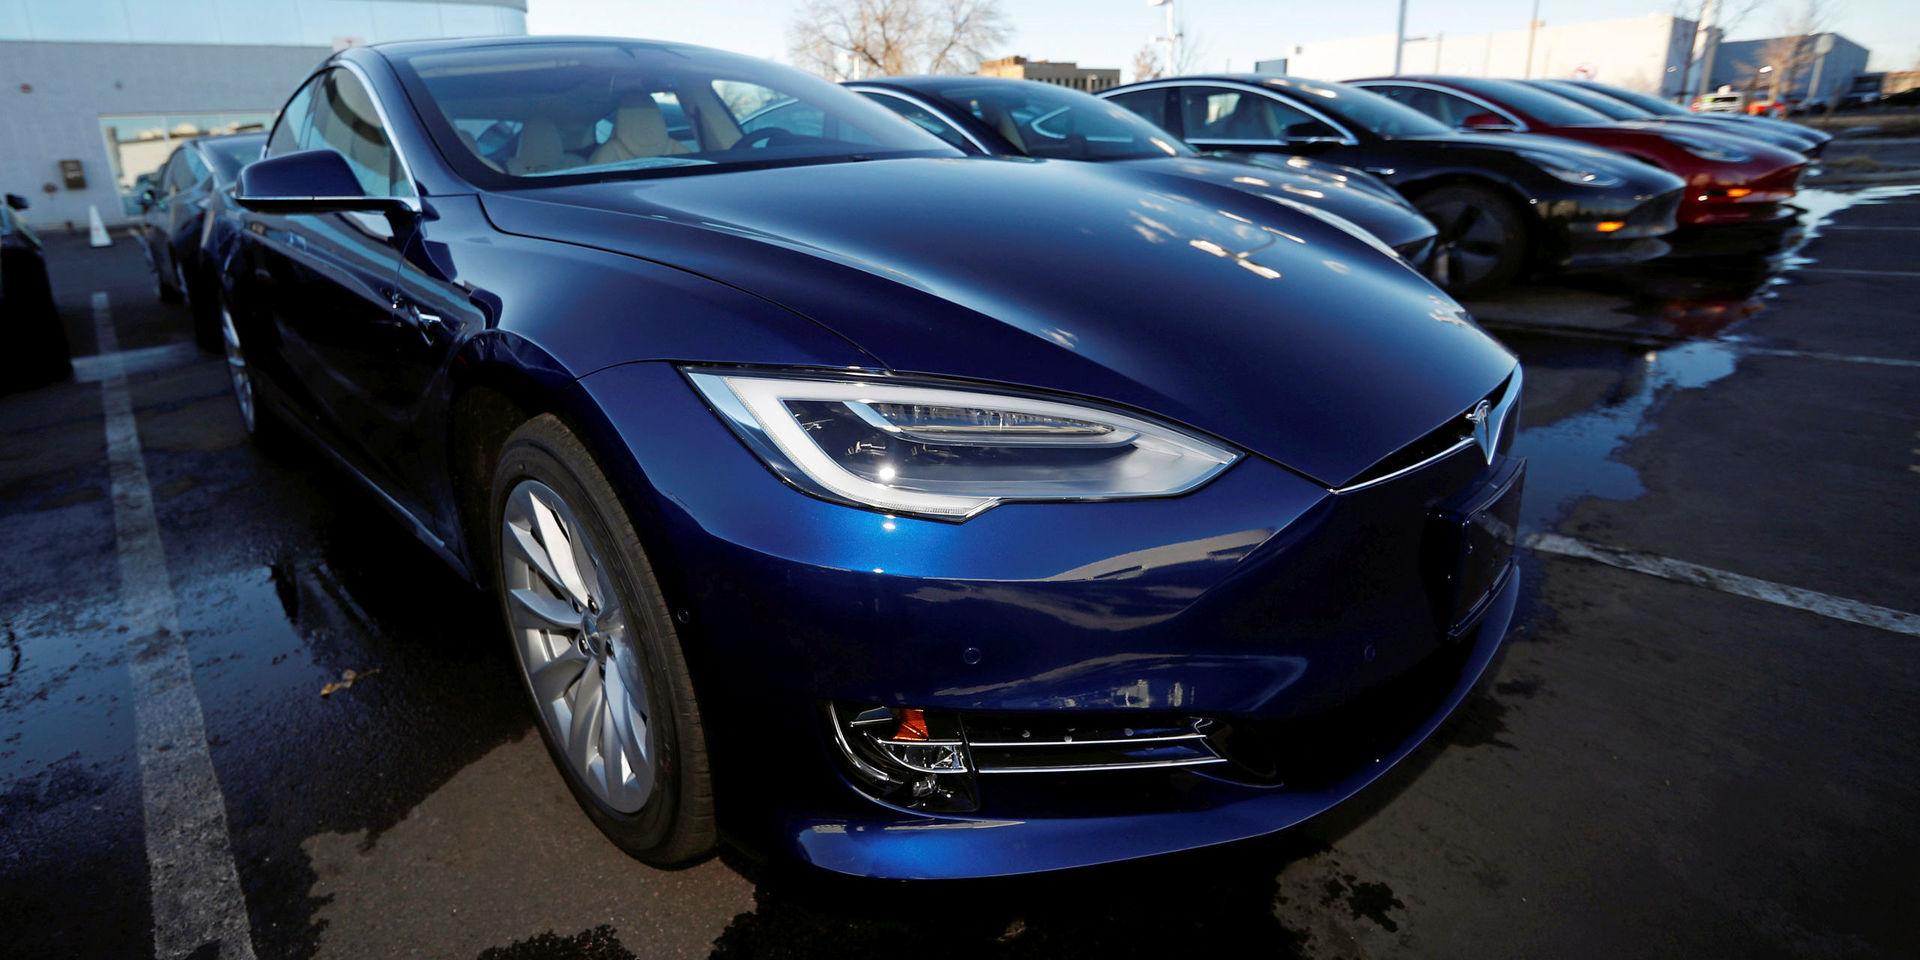 Självgående. Elbilen Tesla lanserar snart en uppdatering som man menar ska göra bilen helt självkörande.